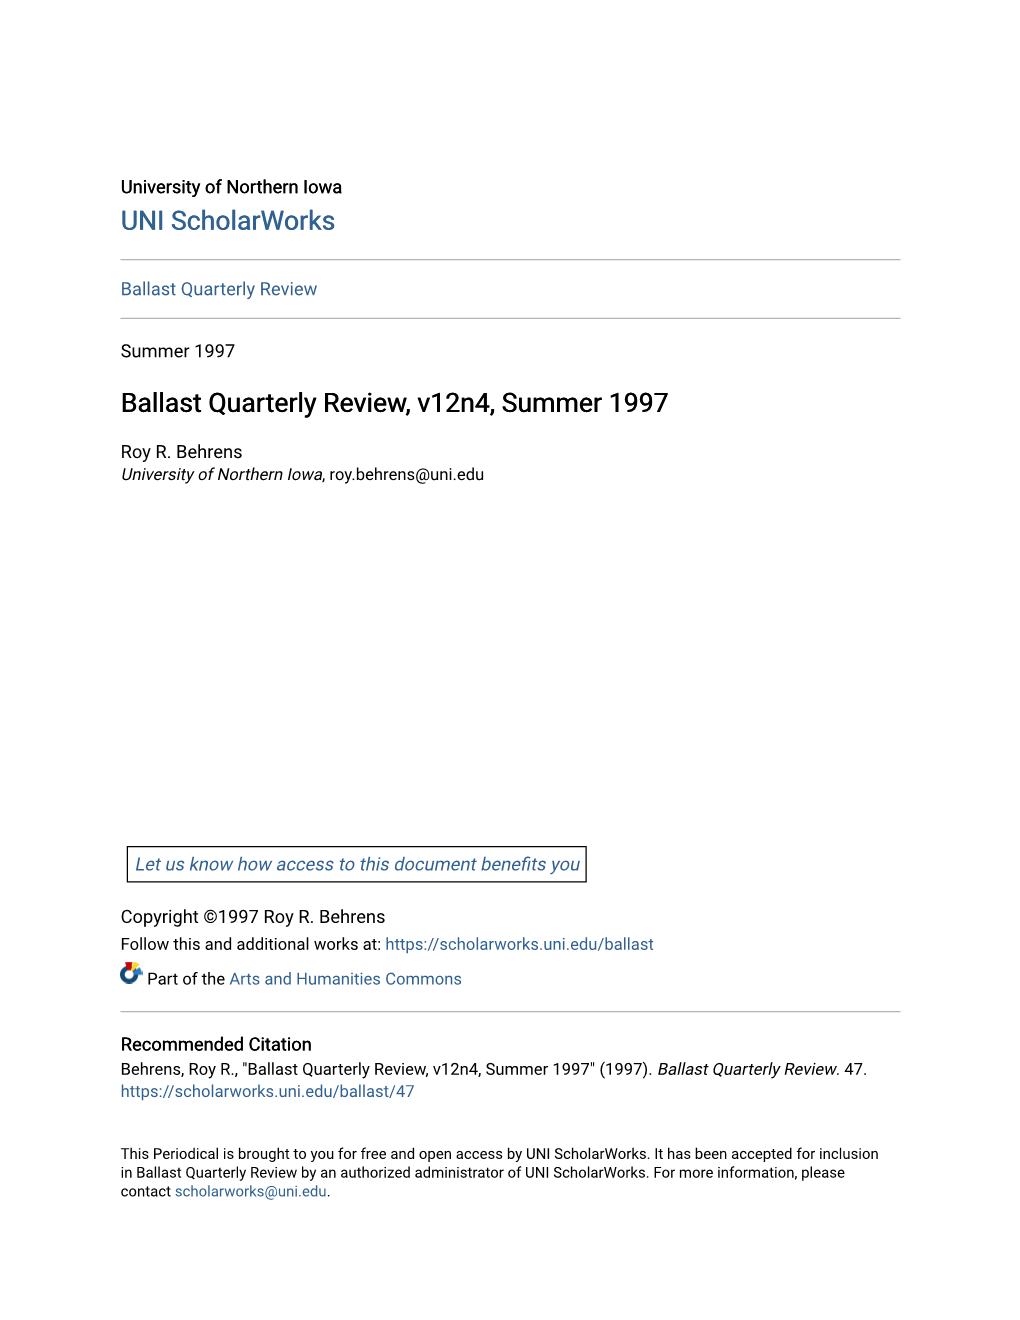 Ballast Quarterly Review, V12n4, Summer 1997